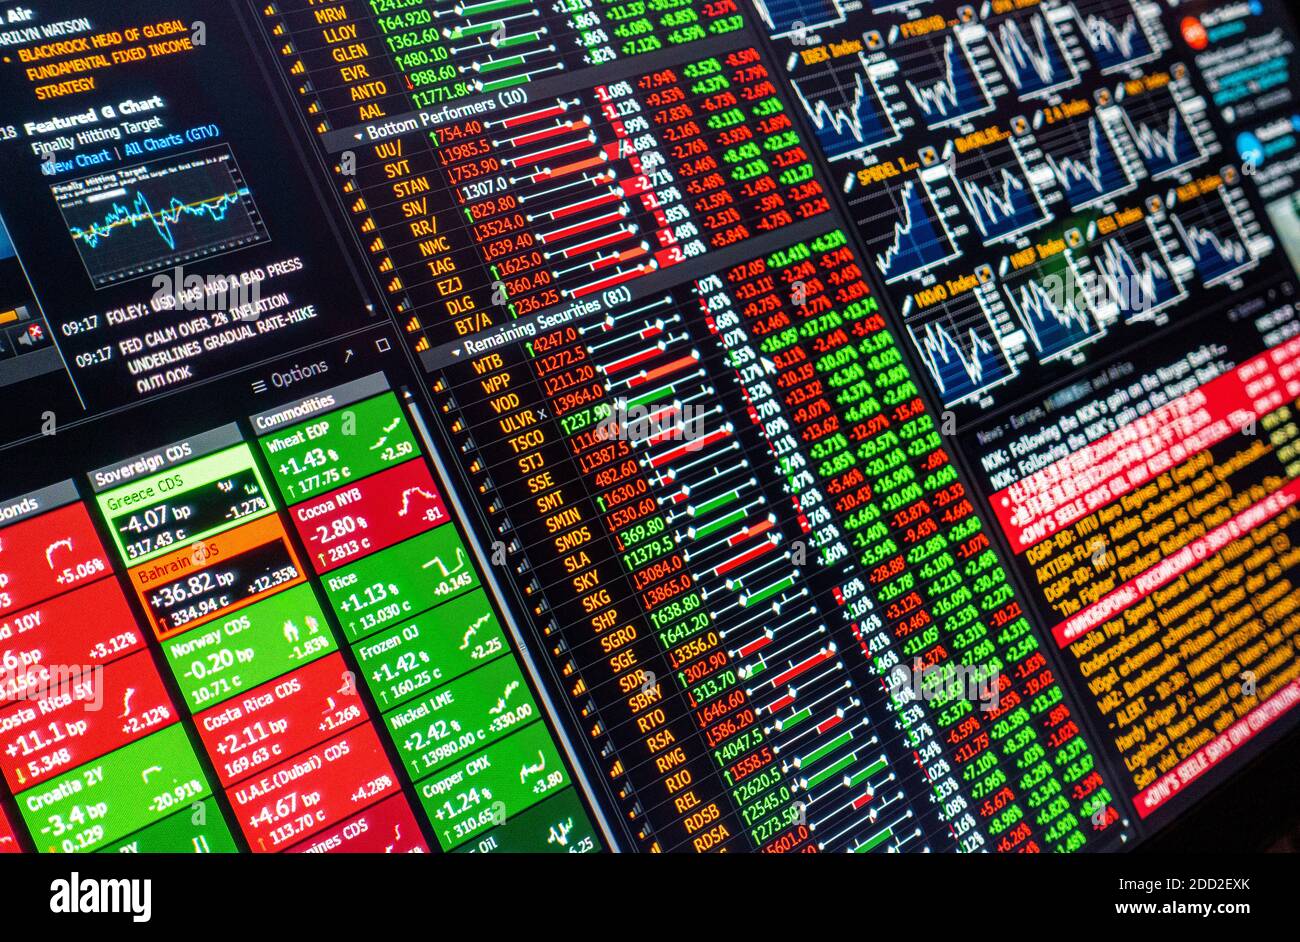 Pantalla de computadora de cerca que muestra los datos financieros de la bolsa de valores Mercados acciones materias primas crédito impago permutas CDS bolsa noticias Foto de stock